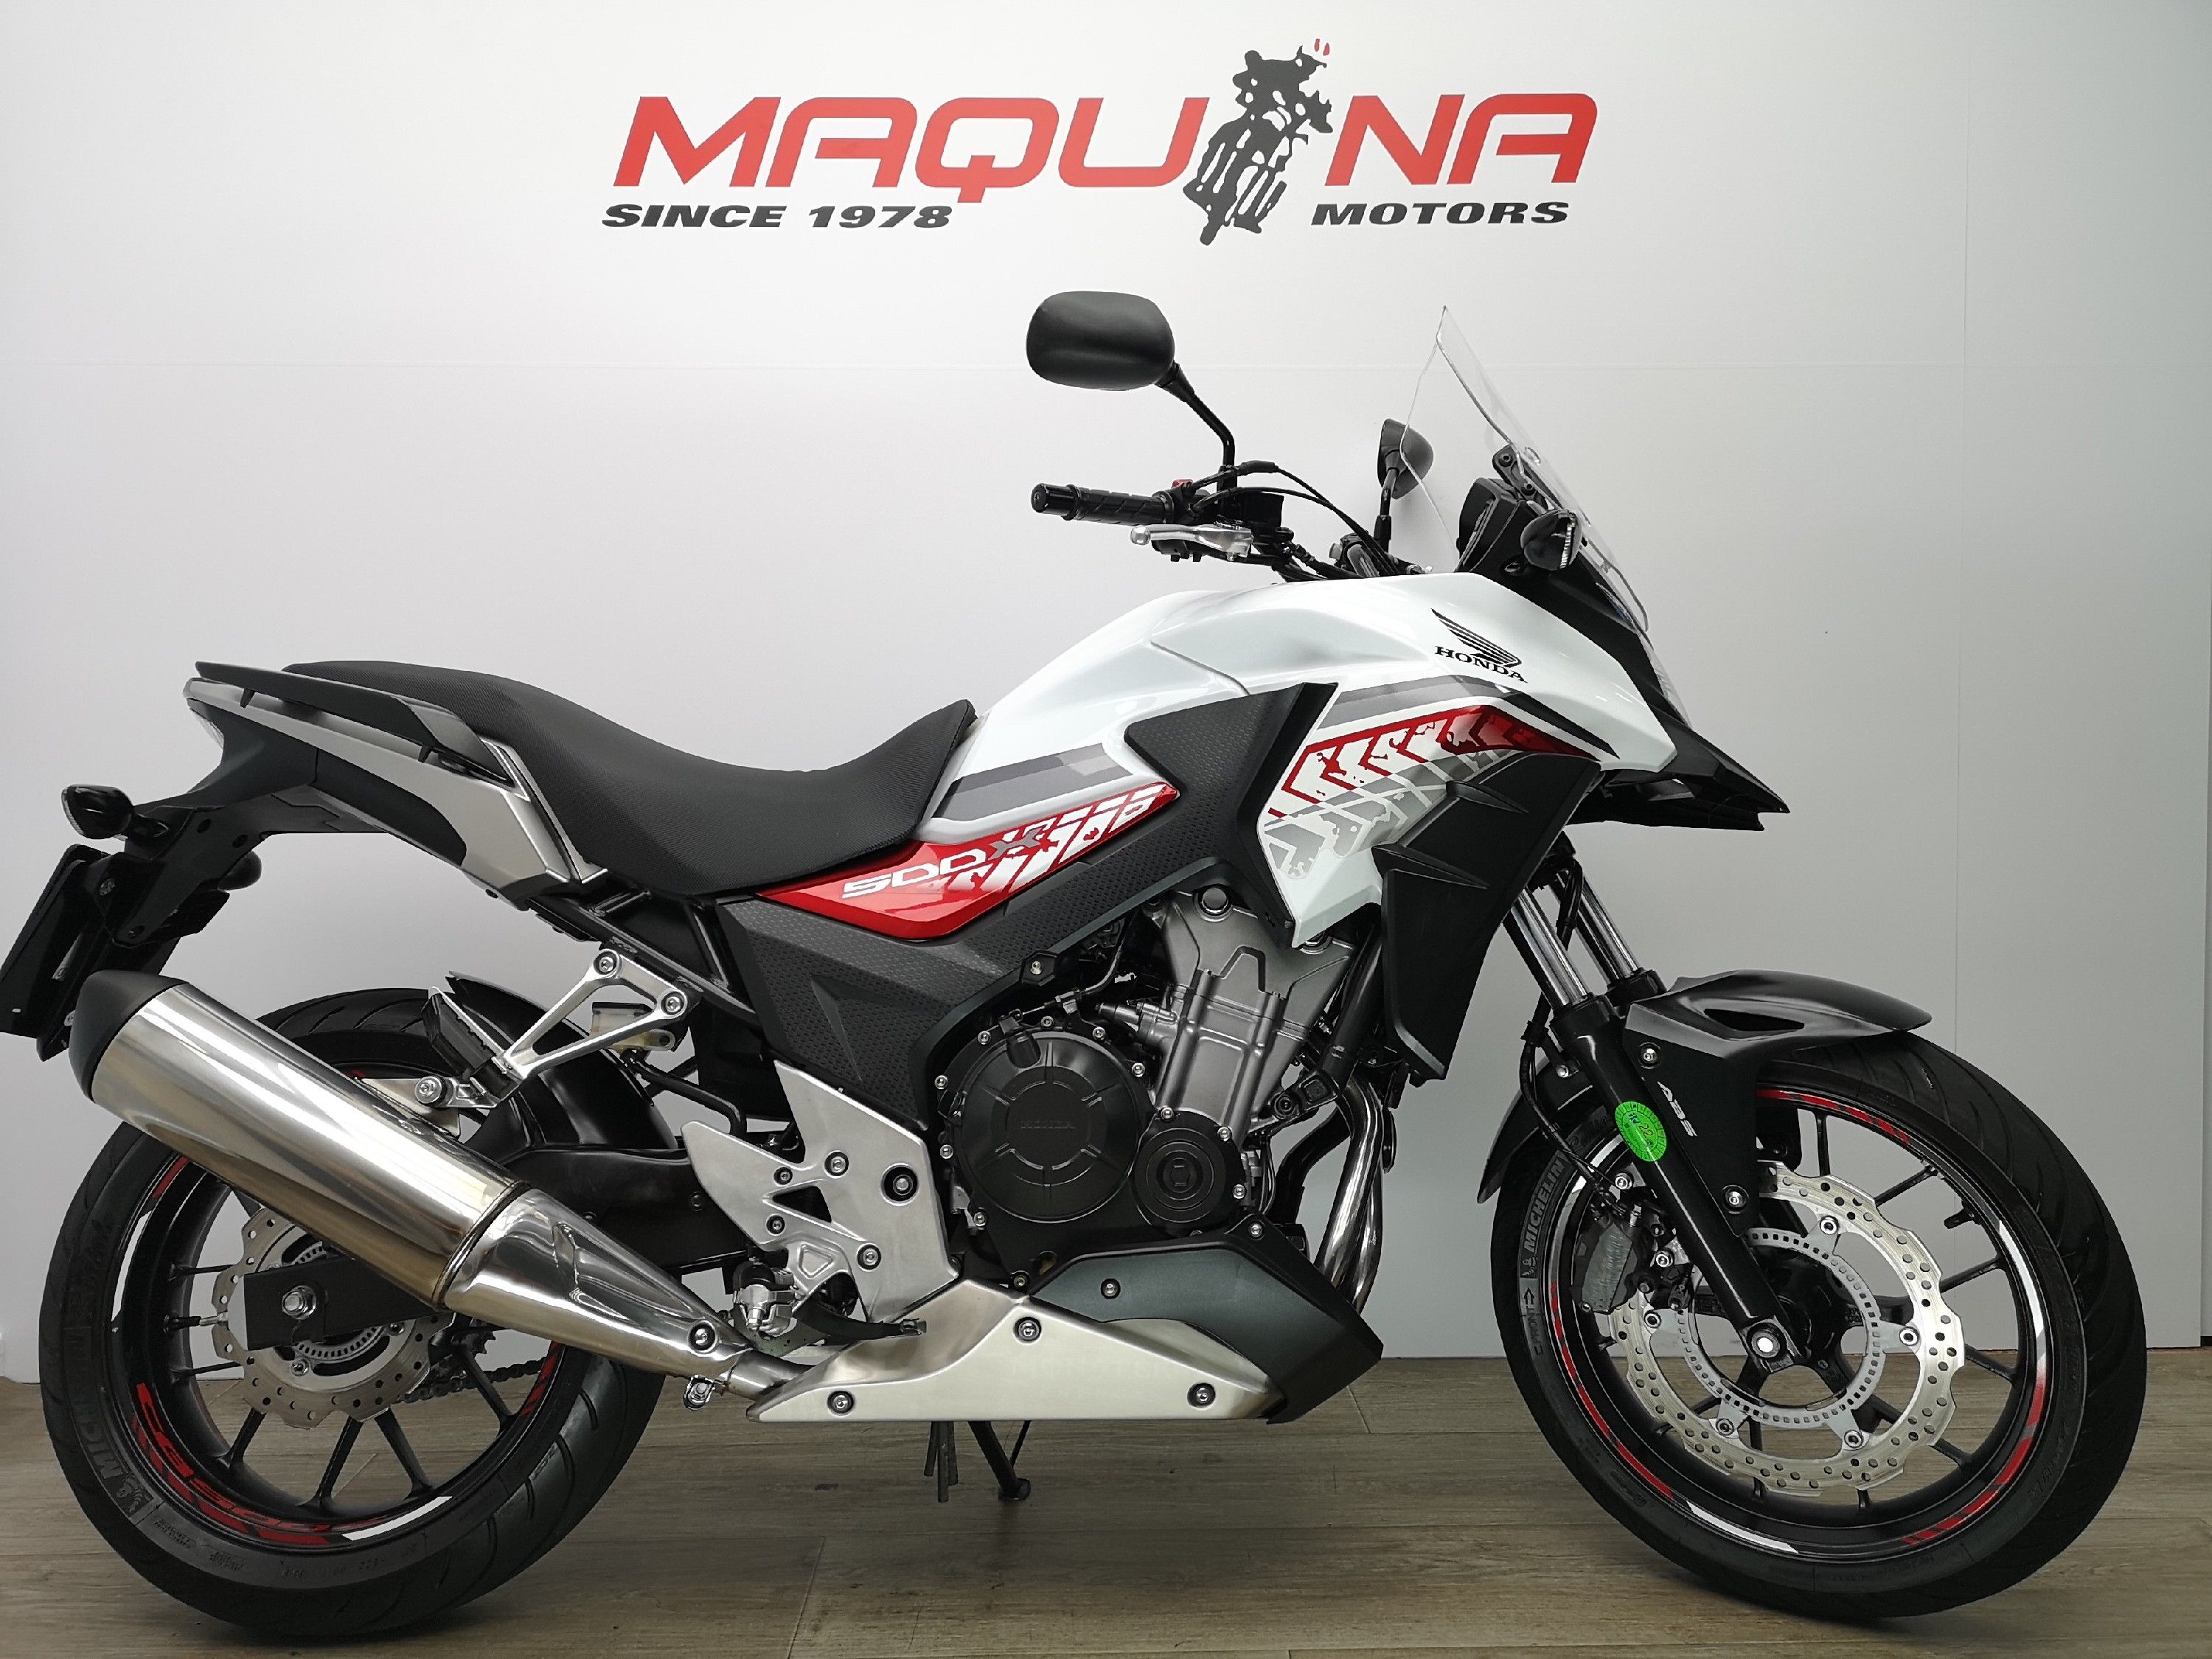 HONDA CB 500 X Maquina Motors motos ocasión